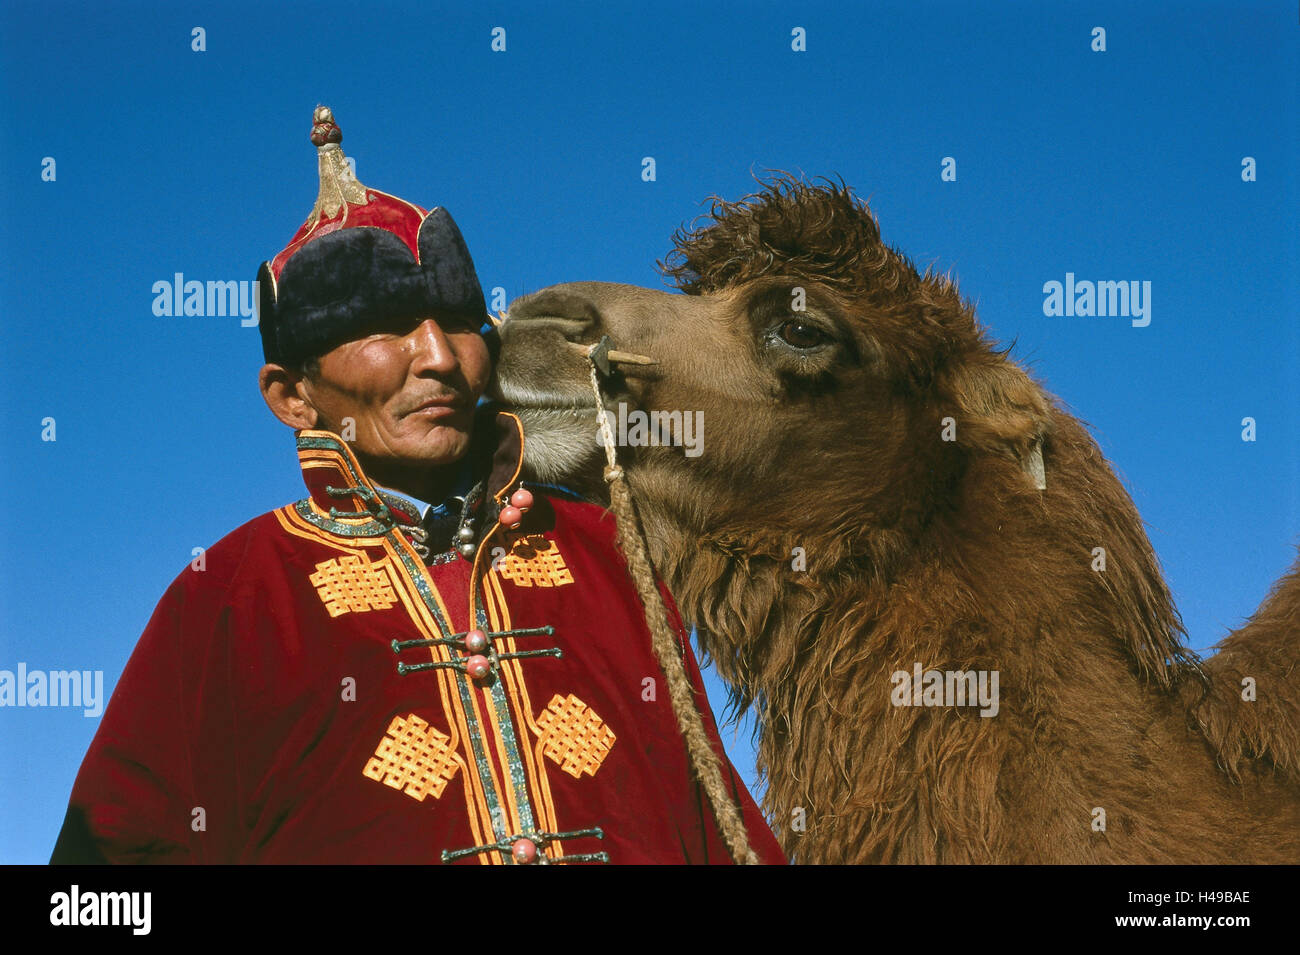 La Mongolie, l'homme, nomade, camel, 'Kiss', animal, portrait, ciel, Asie, Asie centrale, Asie centrale, Gobi, personne, fièrement, mongol, en mongol, demi-nomad, camel nomad, voyageur, purger, coiffures, costume national, Deel, traditionnellement, généralement, la météo-tannées, heureux, les animaux, les mammifères, le vieux monde camel, bénéficier d'animaux, le fardeau de la bête, équitation, animaux animal benêt, équipe, toucher, caresser, 'whisper' affection, suture, l'amour, la solidarité, l'amitié, l'amour des animaux, en chuchotant, affectueusement, affectueusement, curieusement, l'humour, Banque D'Images